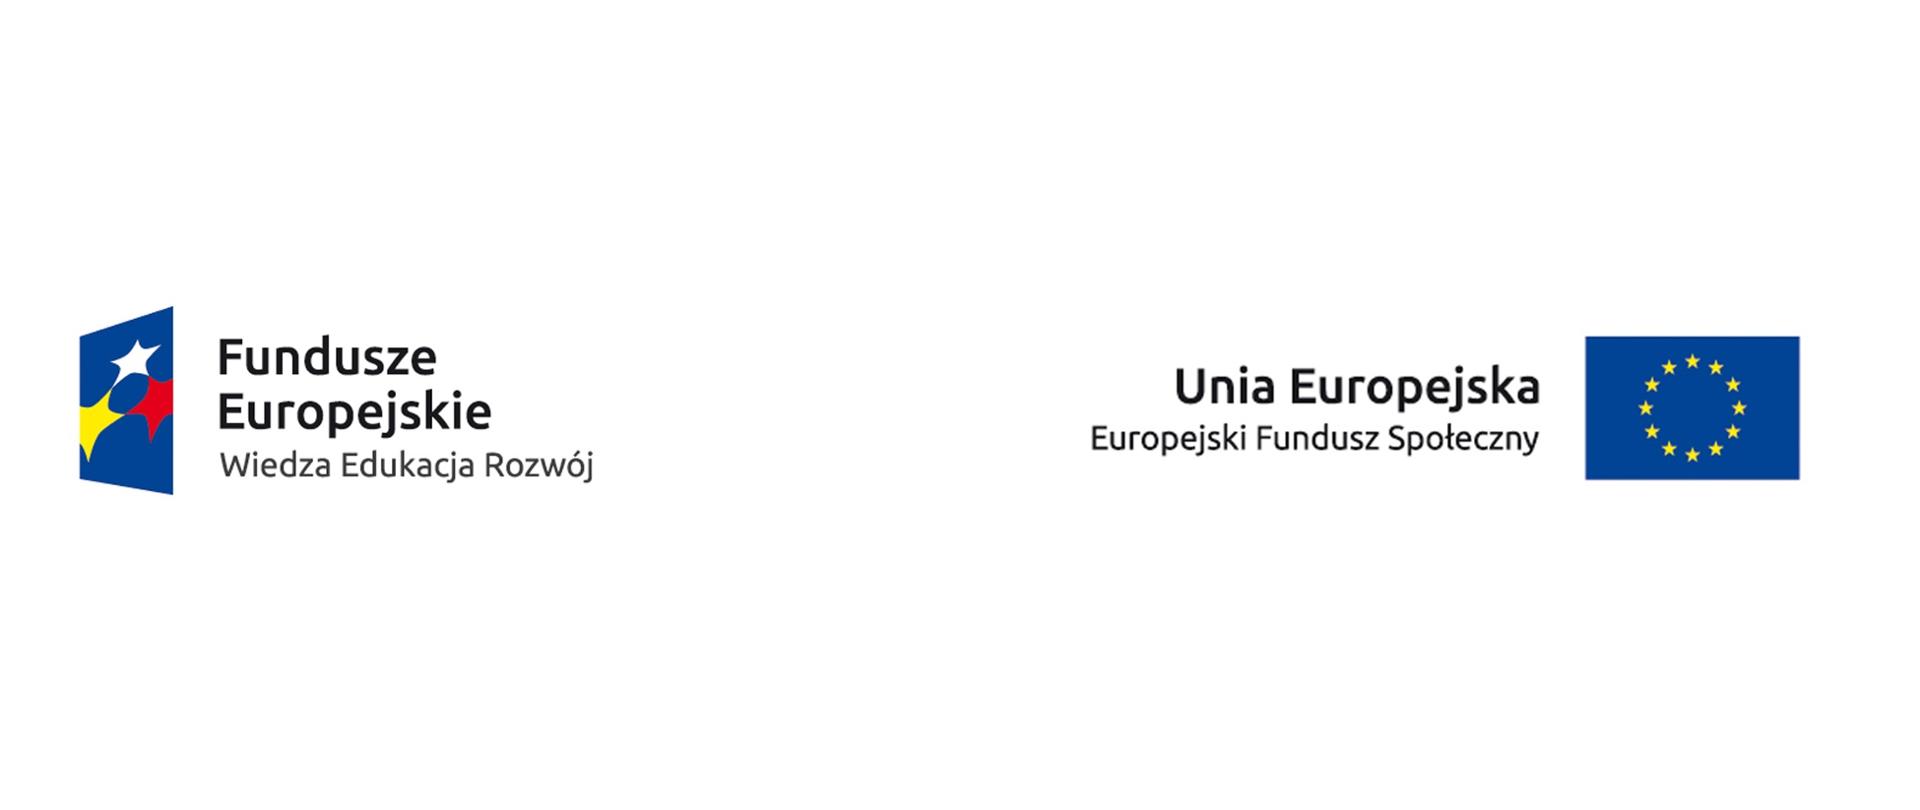 Logo Fundusze Europejskie Wiedza Edukacja Rozwój oraz Unia Eropejska Europejki Fundusz Społeczny